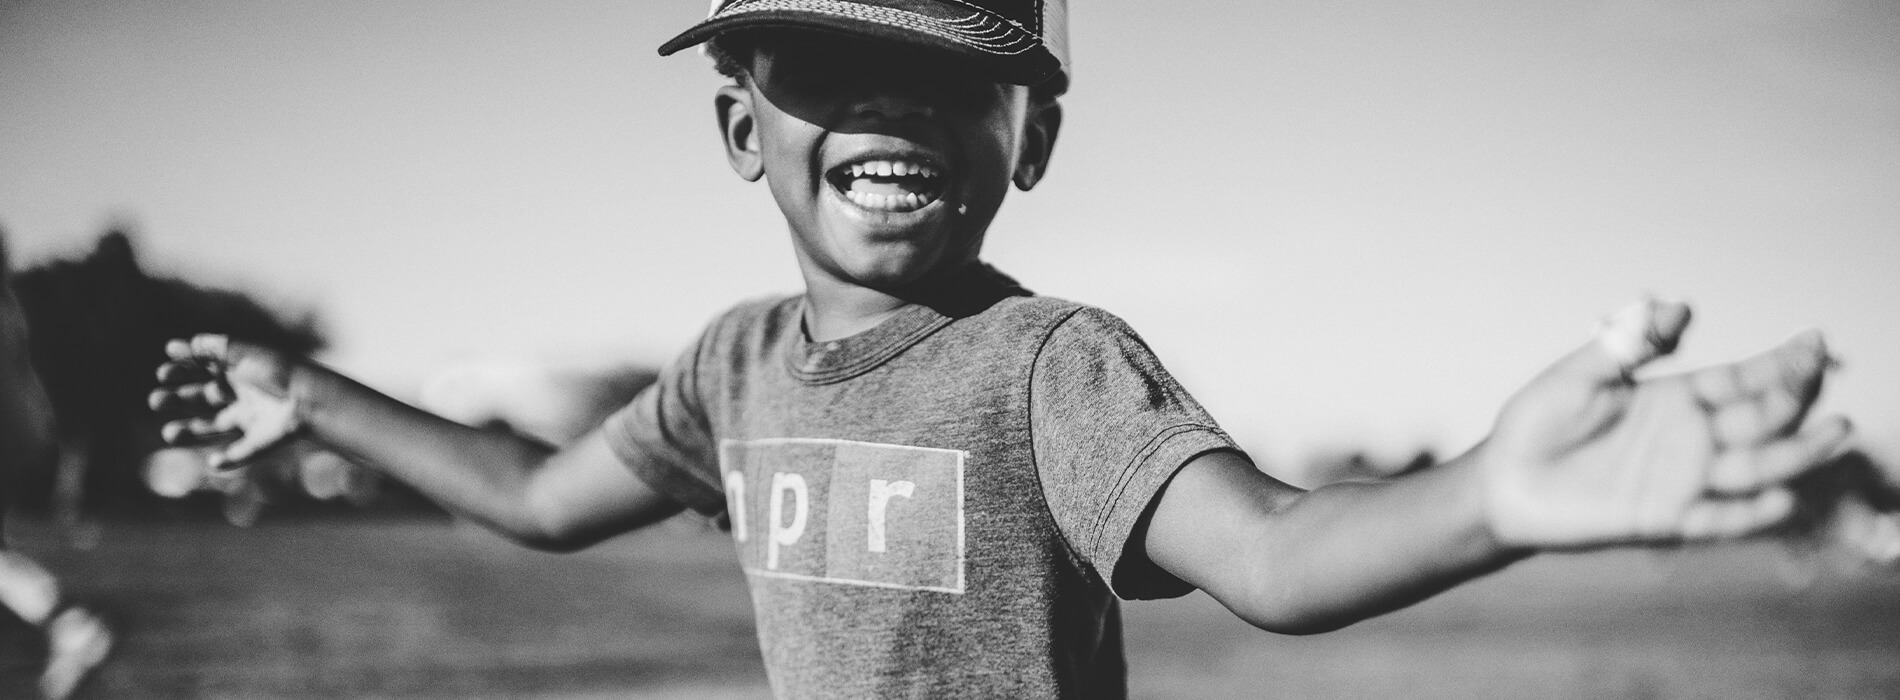 Smiling child wearing an N P R shirt